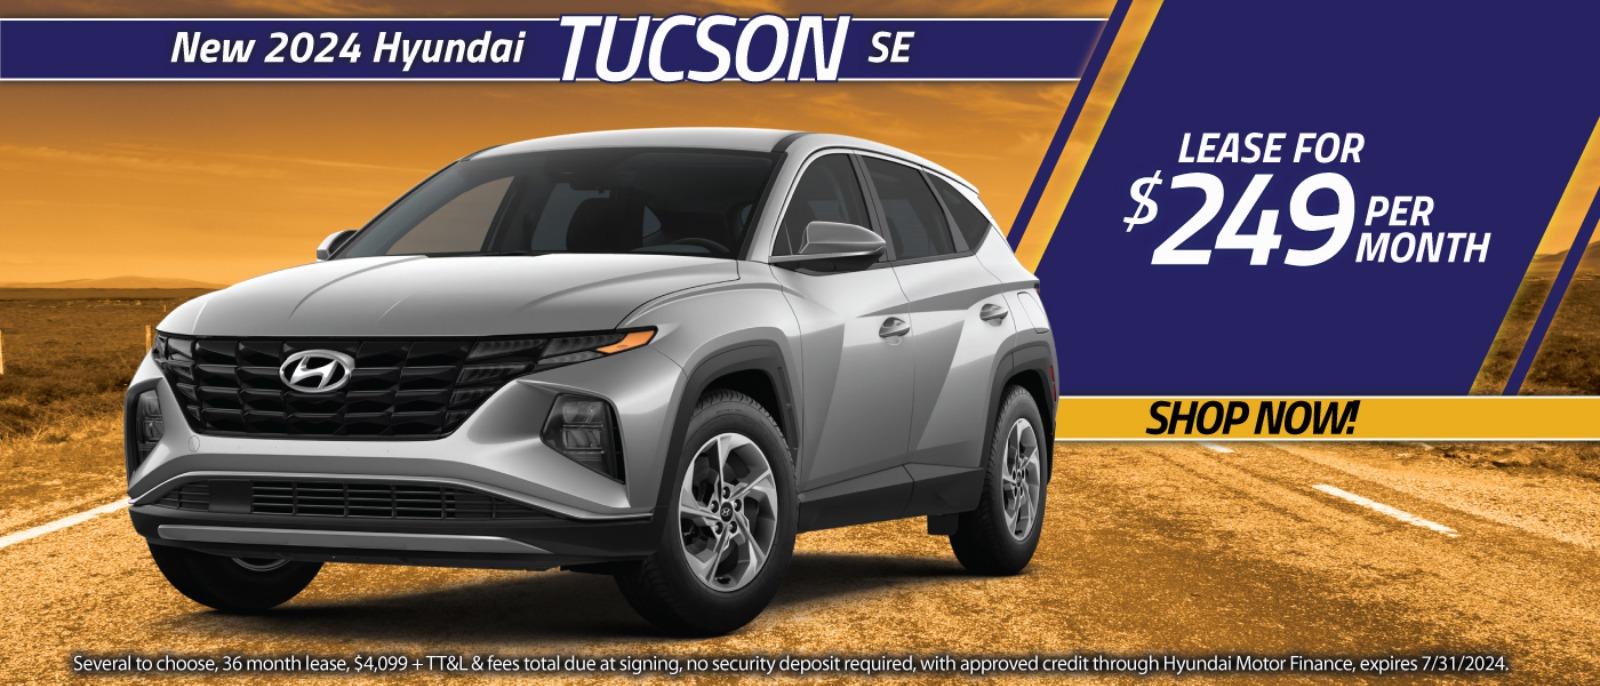 New 2024 Hyundai Tucson